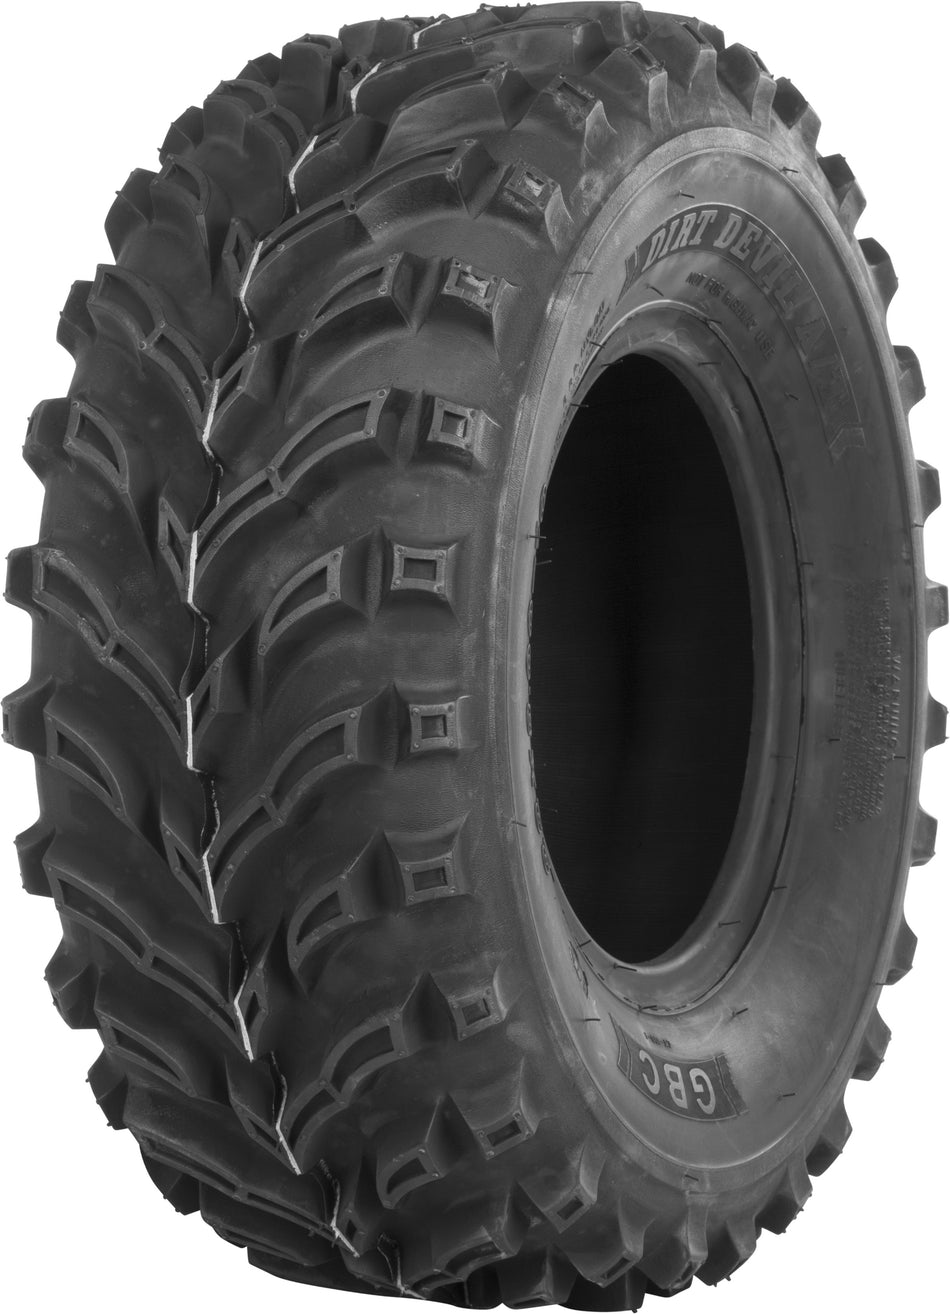 GBC Tire Dirt Devil A/T Front 24x8-11 Bias Lr-320lbs AR1104